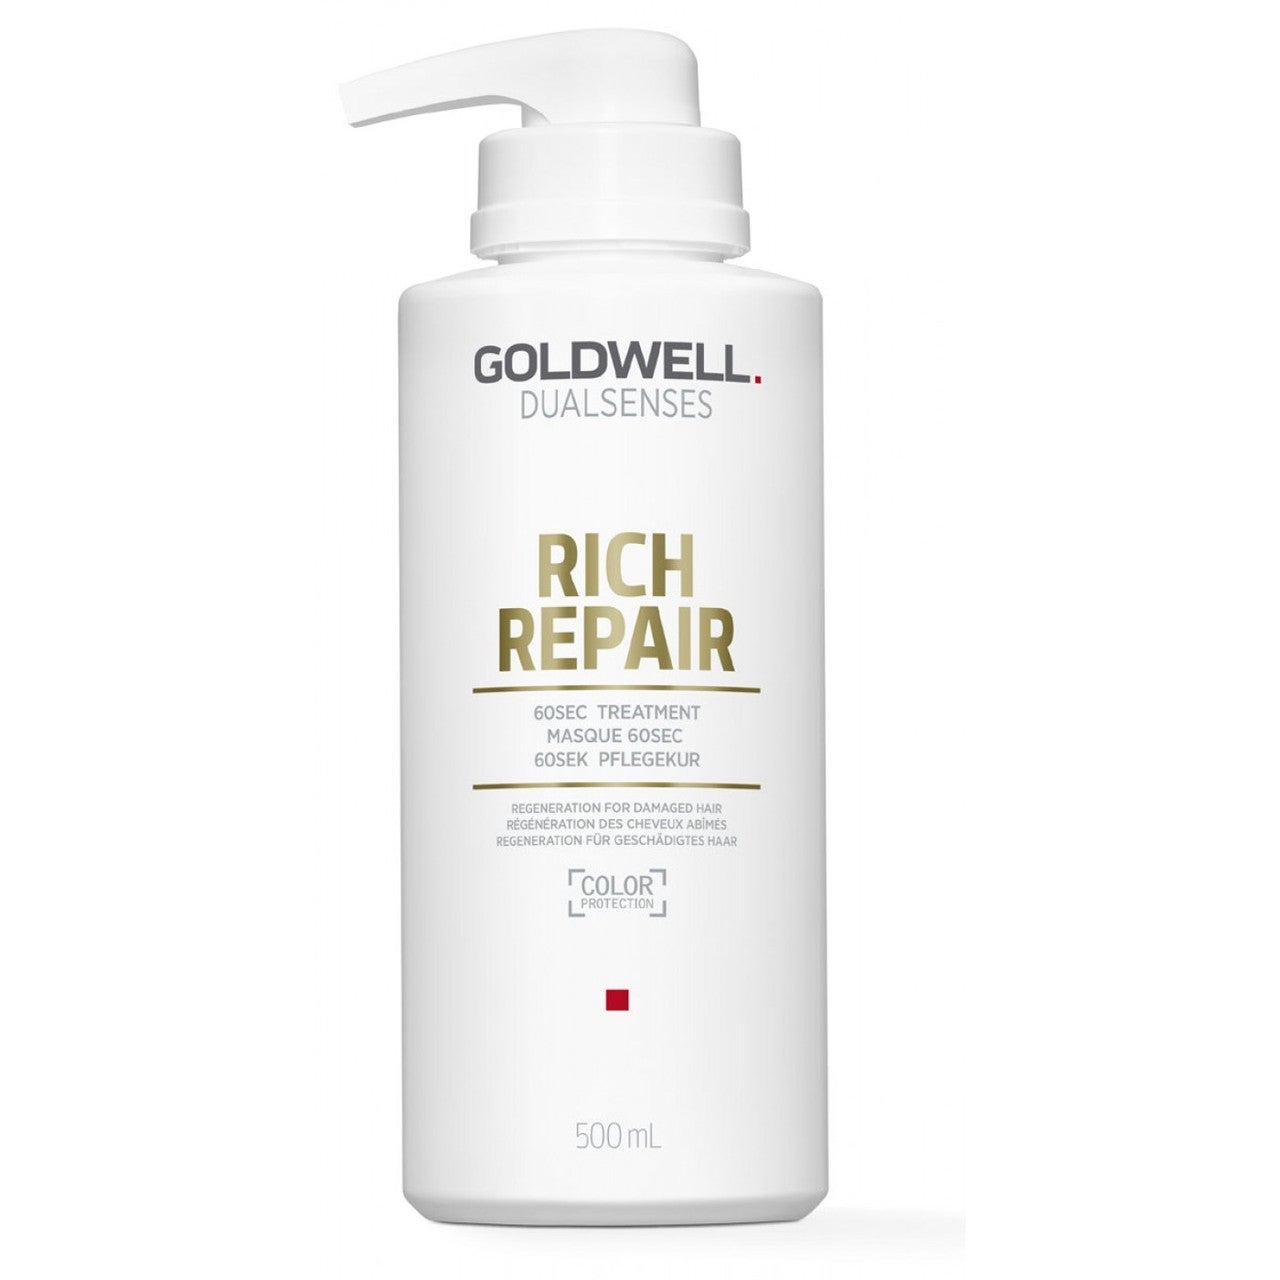 Goldwell DualSenses Rich Repair 60 SEC Treatment- 500ml